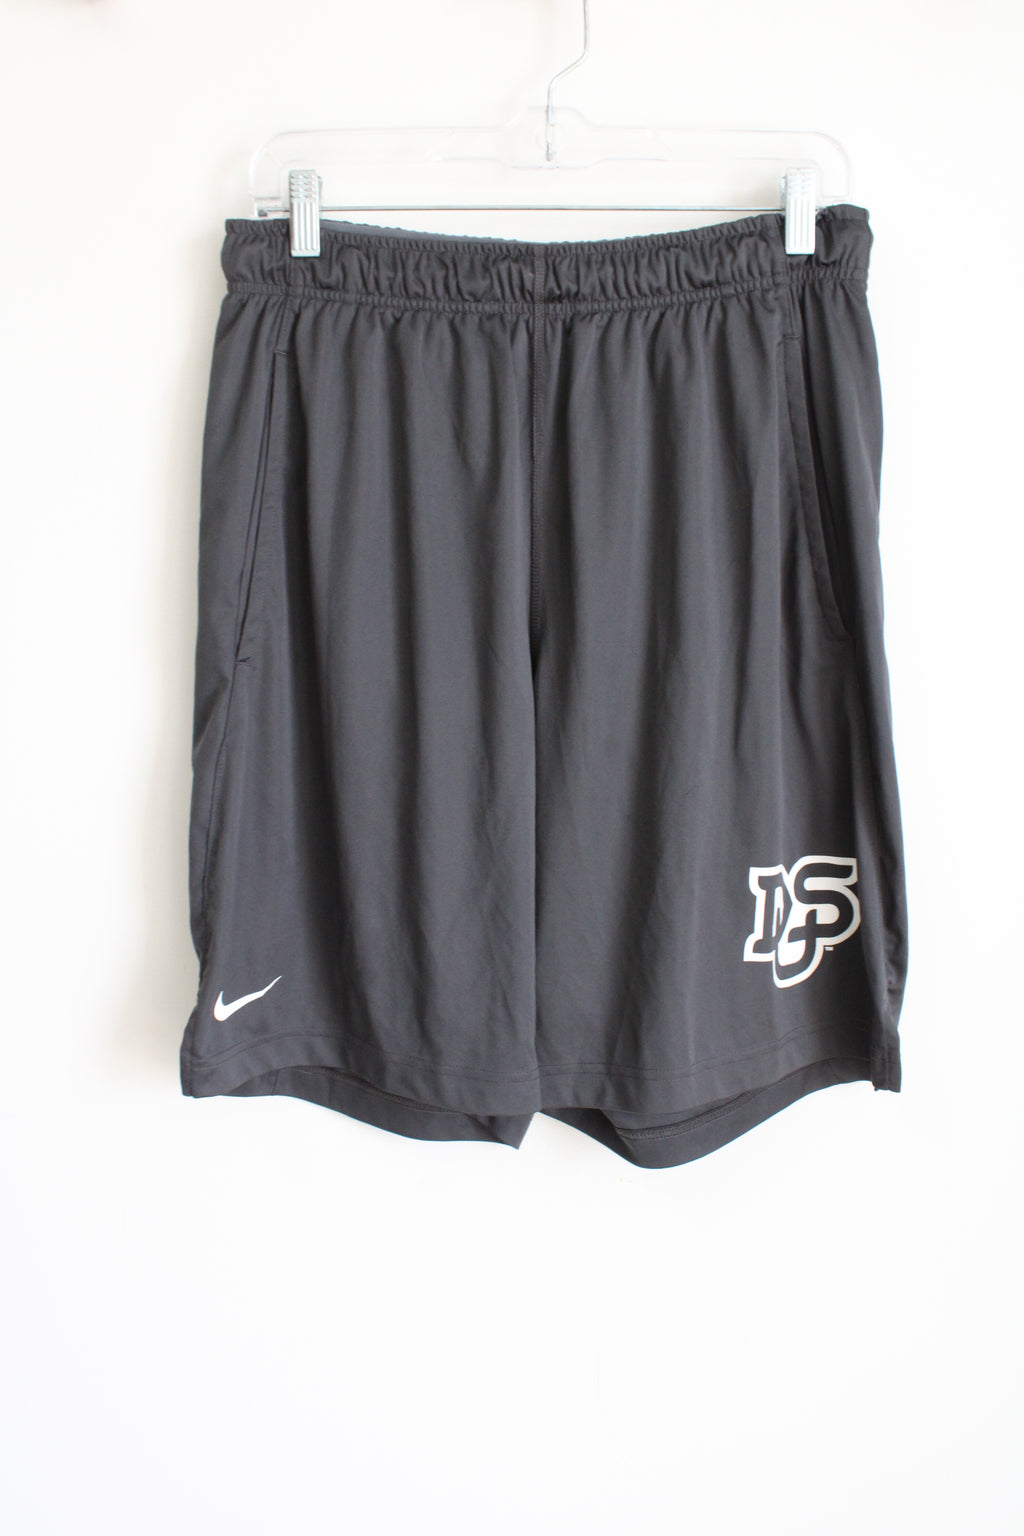 Nike Dri-Fit DUS Gray Shorts | L